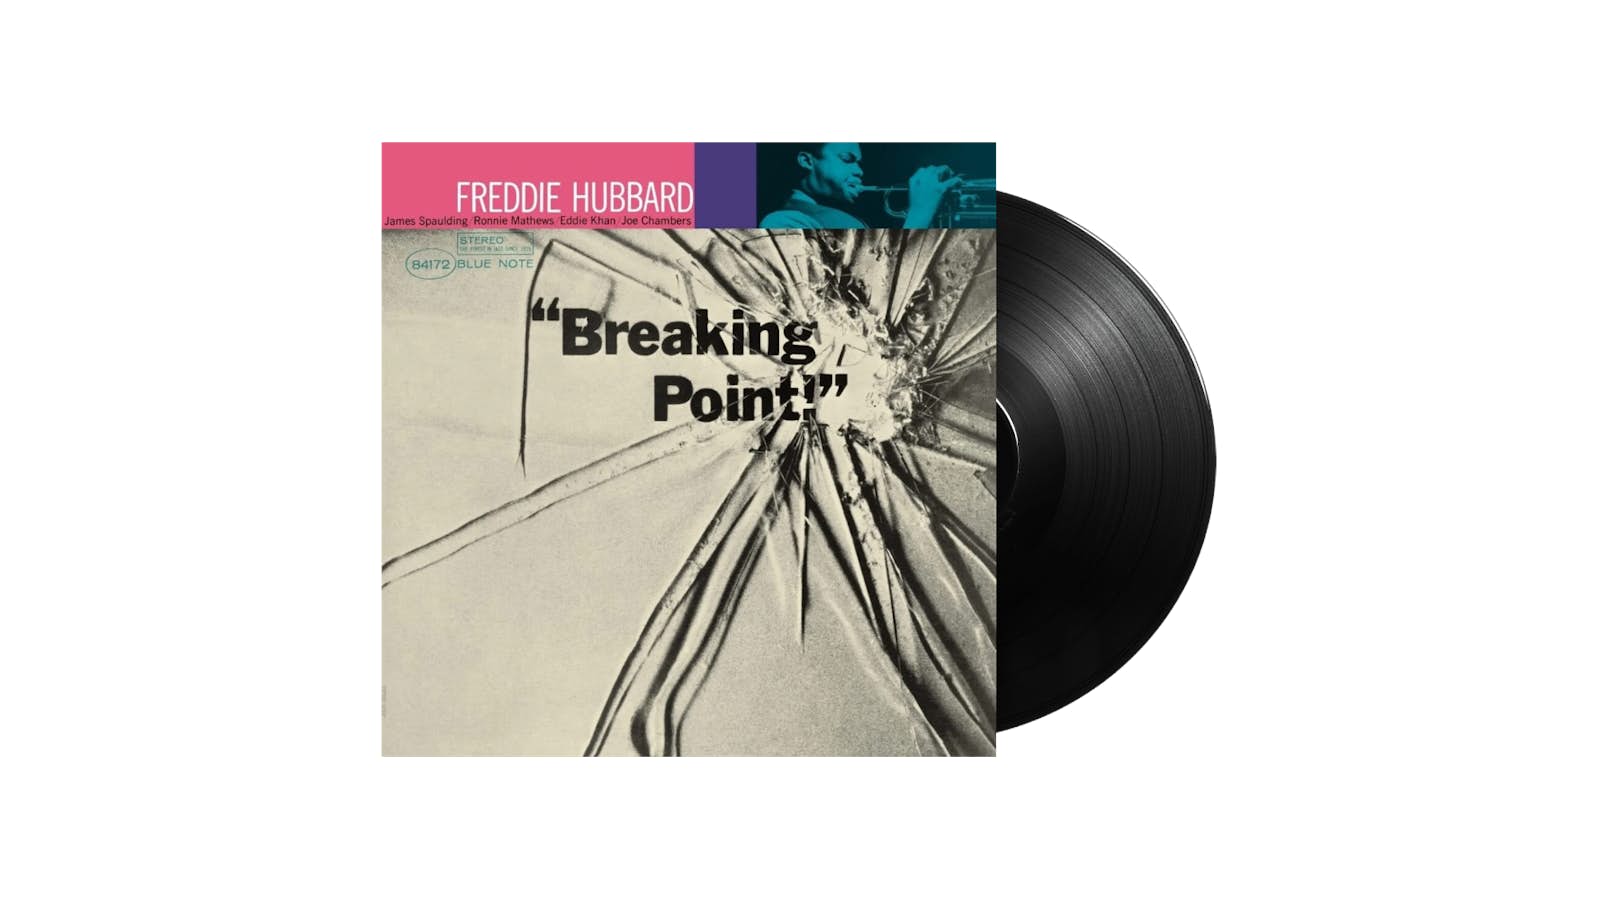 Freddie Hubbard - Breaking Point! (Blue Note Tone Poet Series) LP